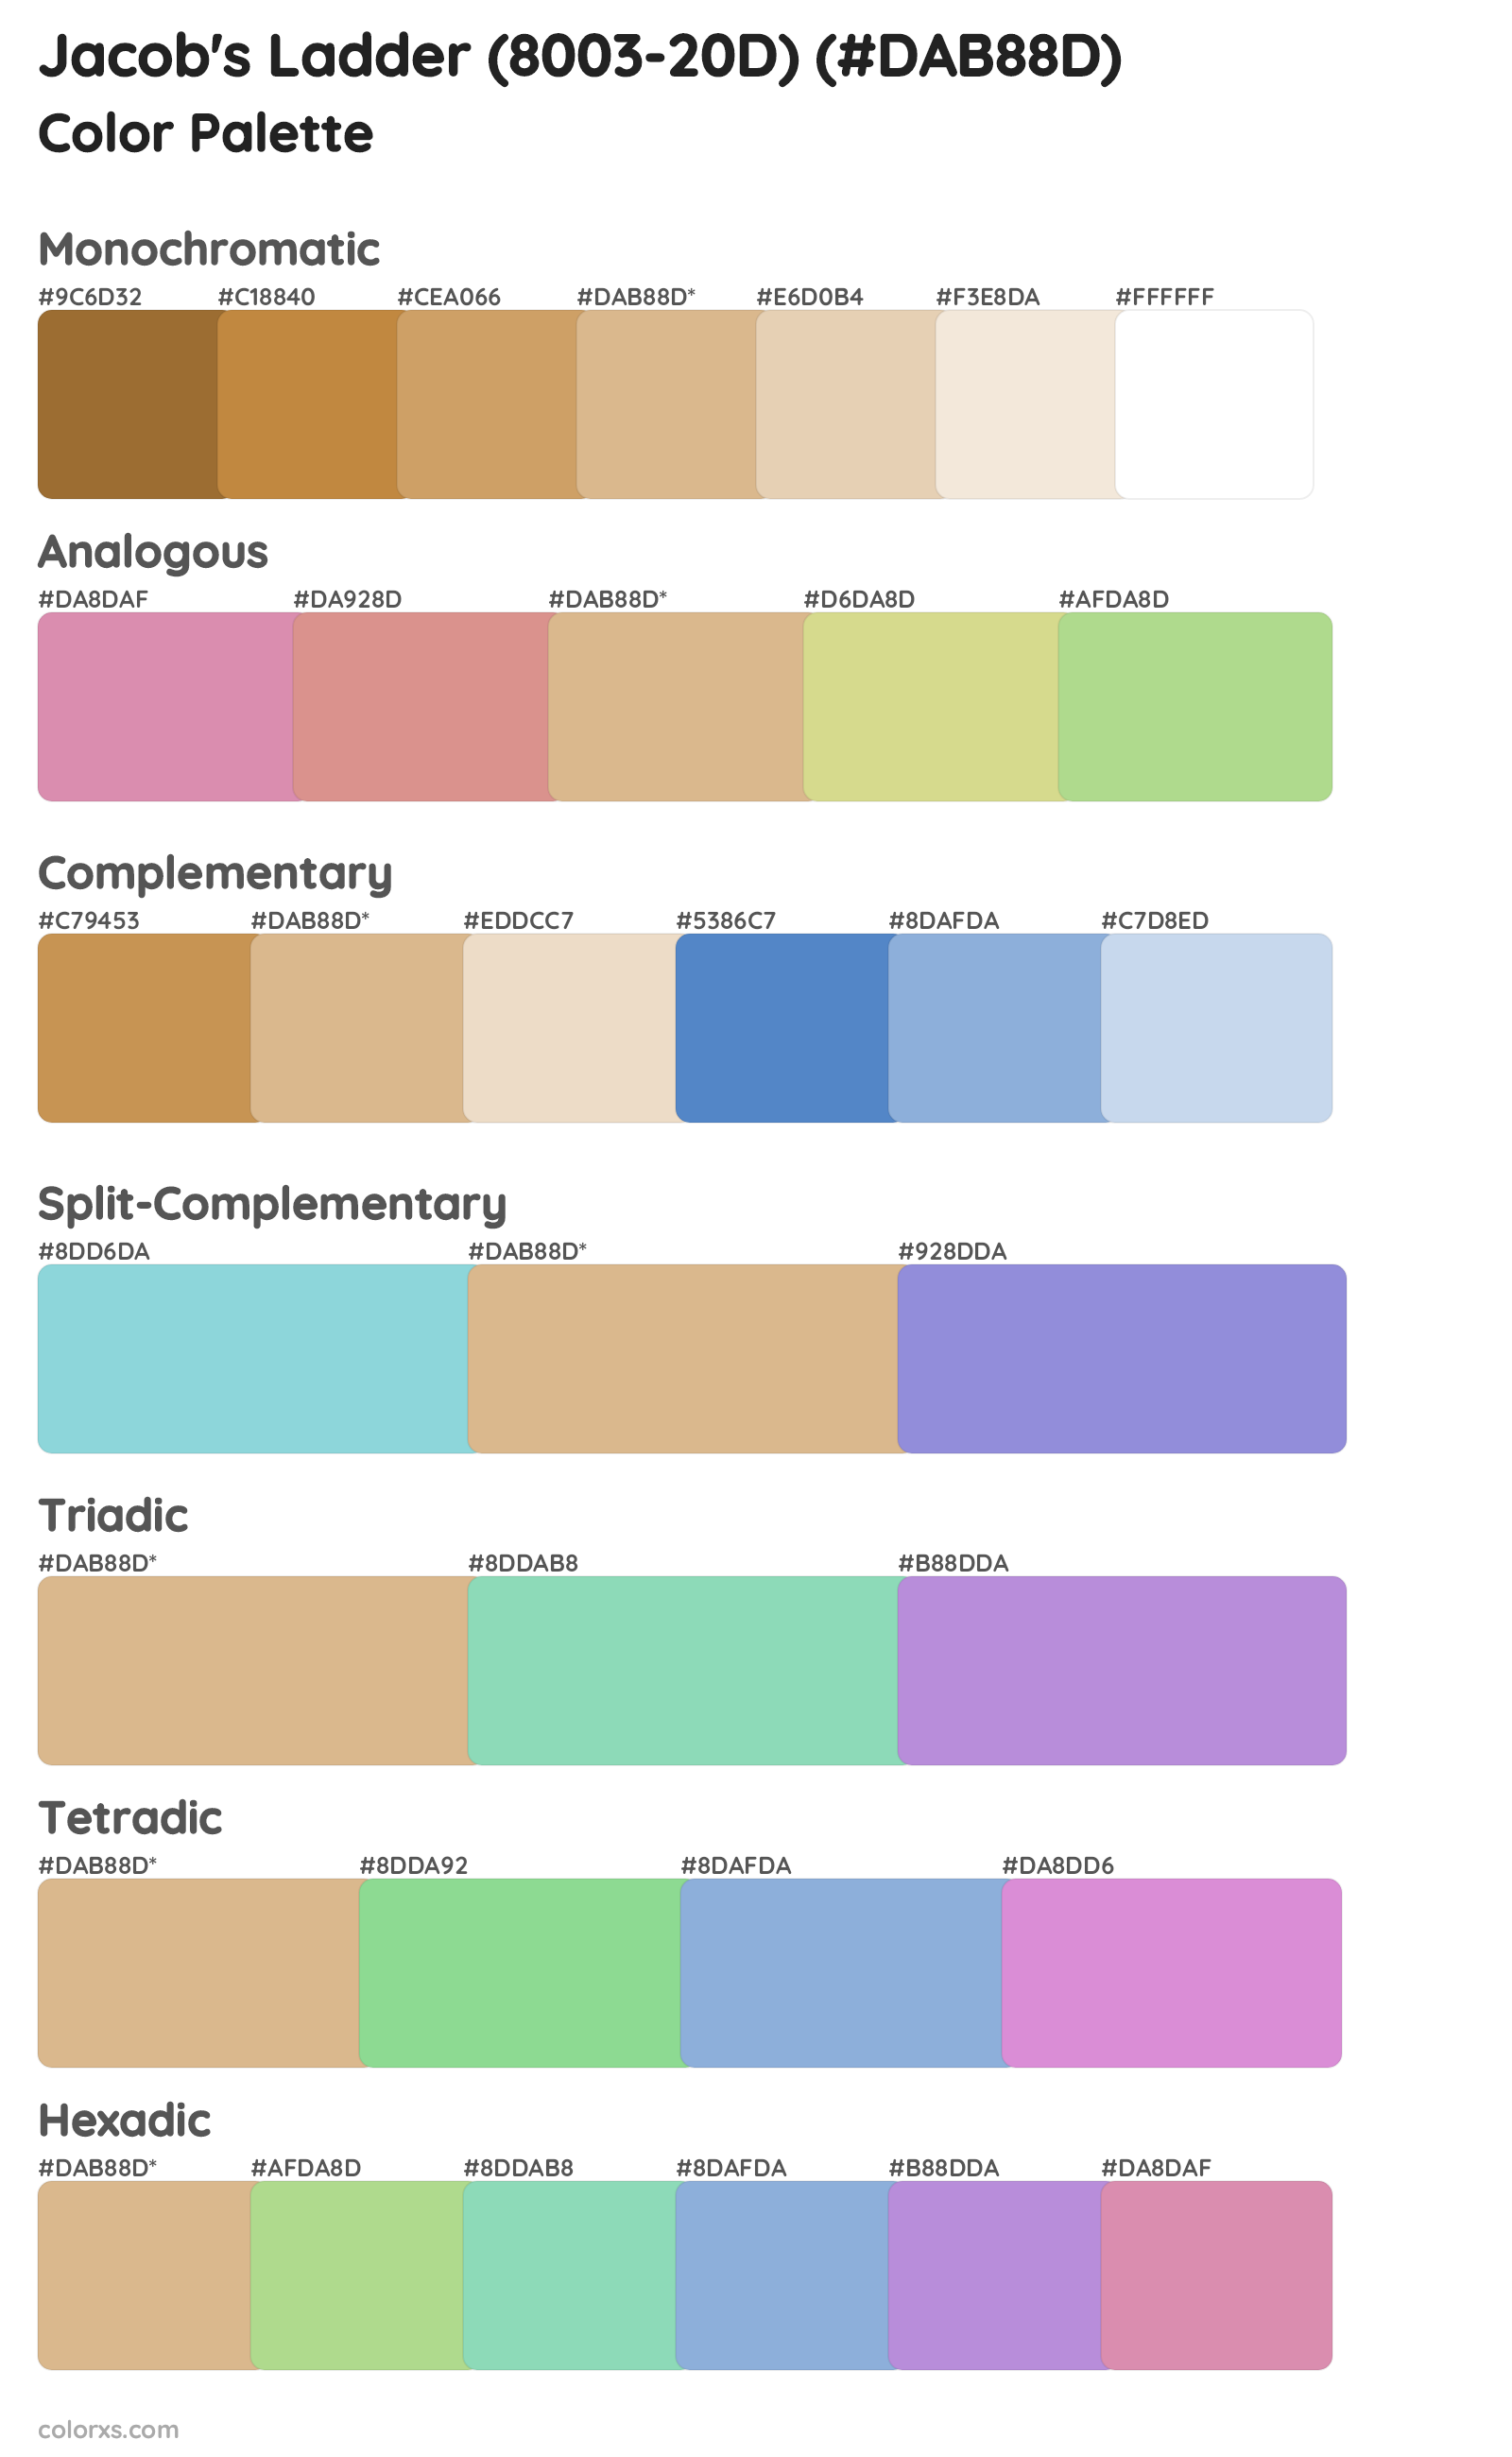 Jacob's Ladder (8003-20D) Color Scheme Palettes